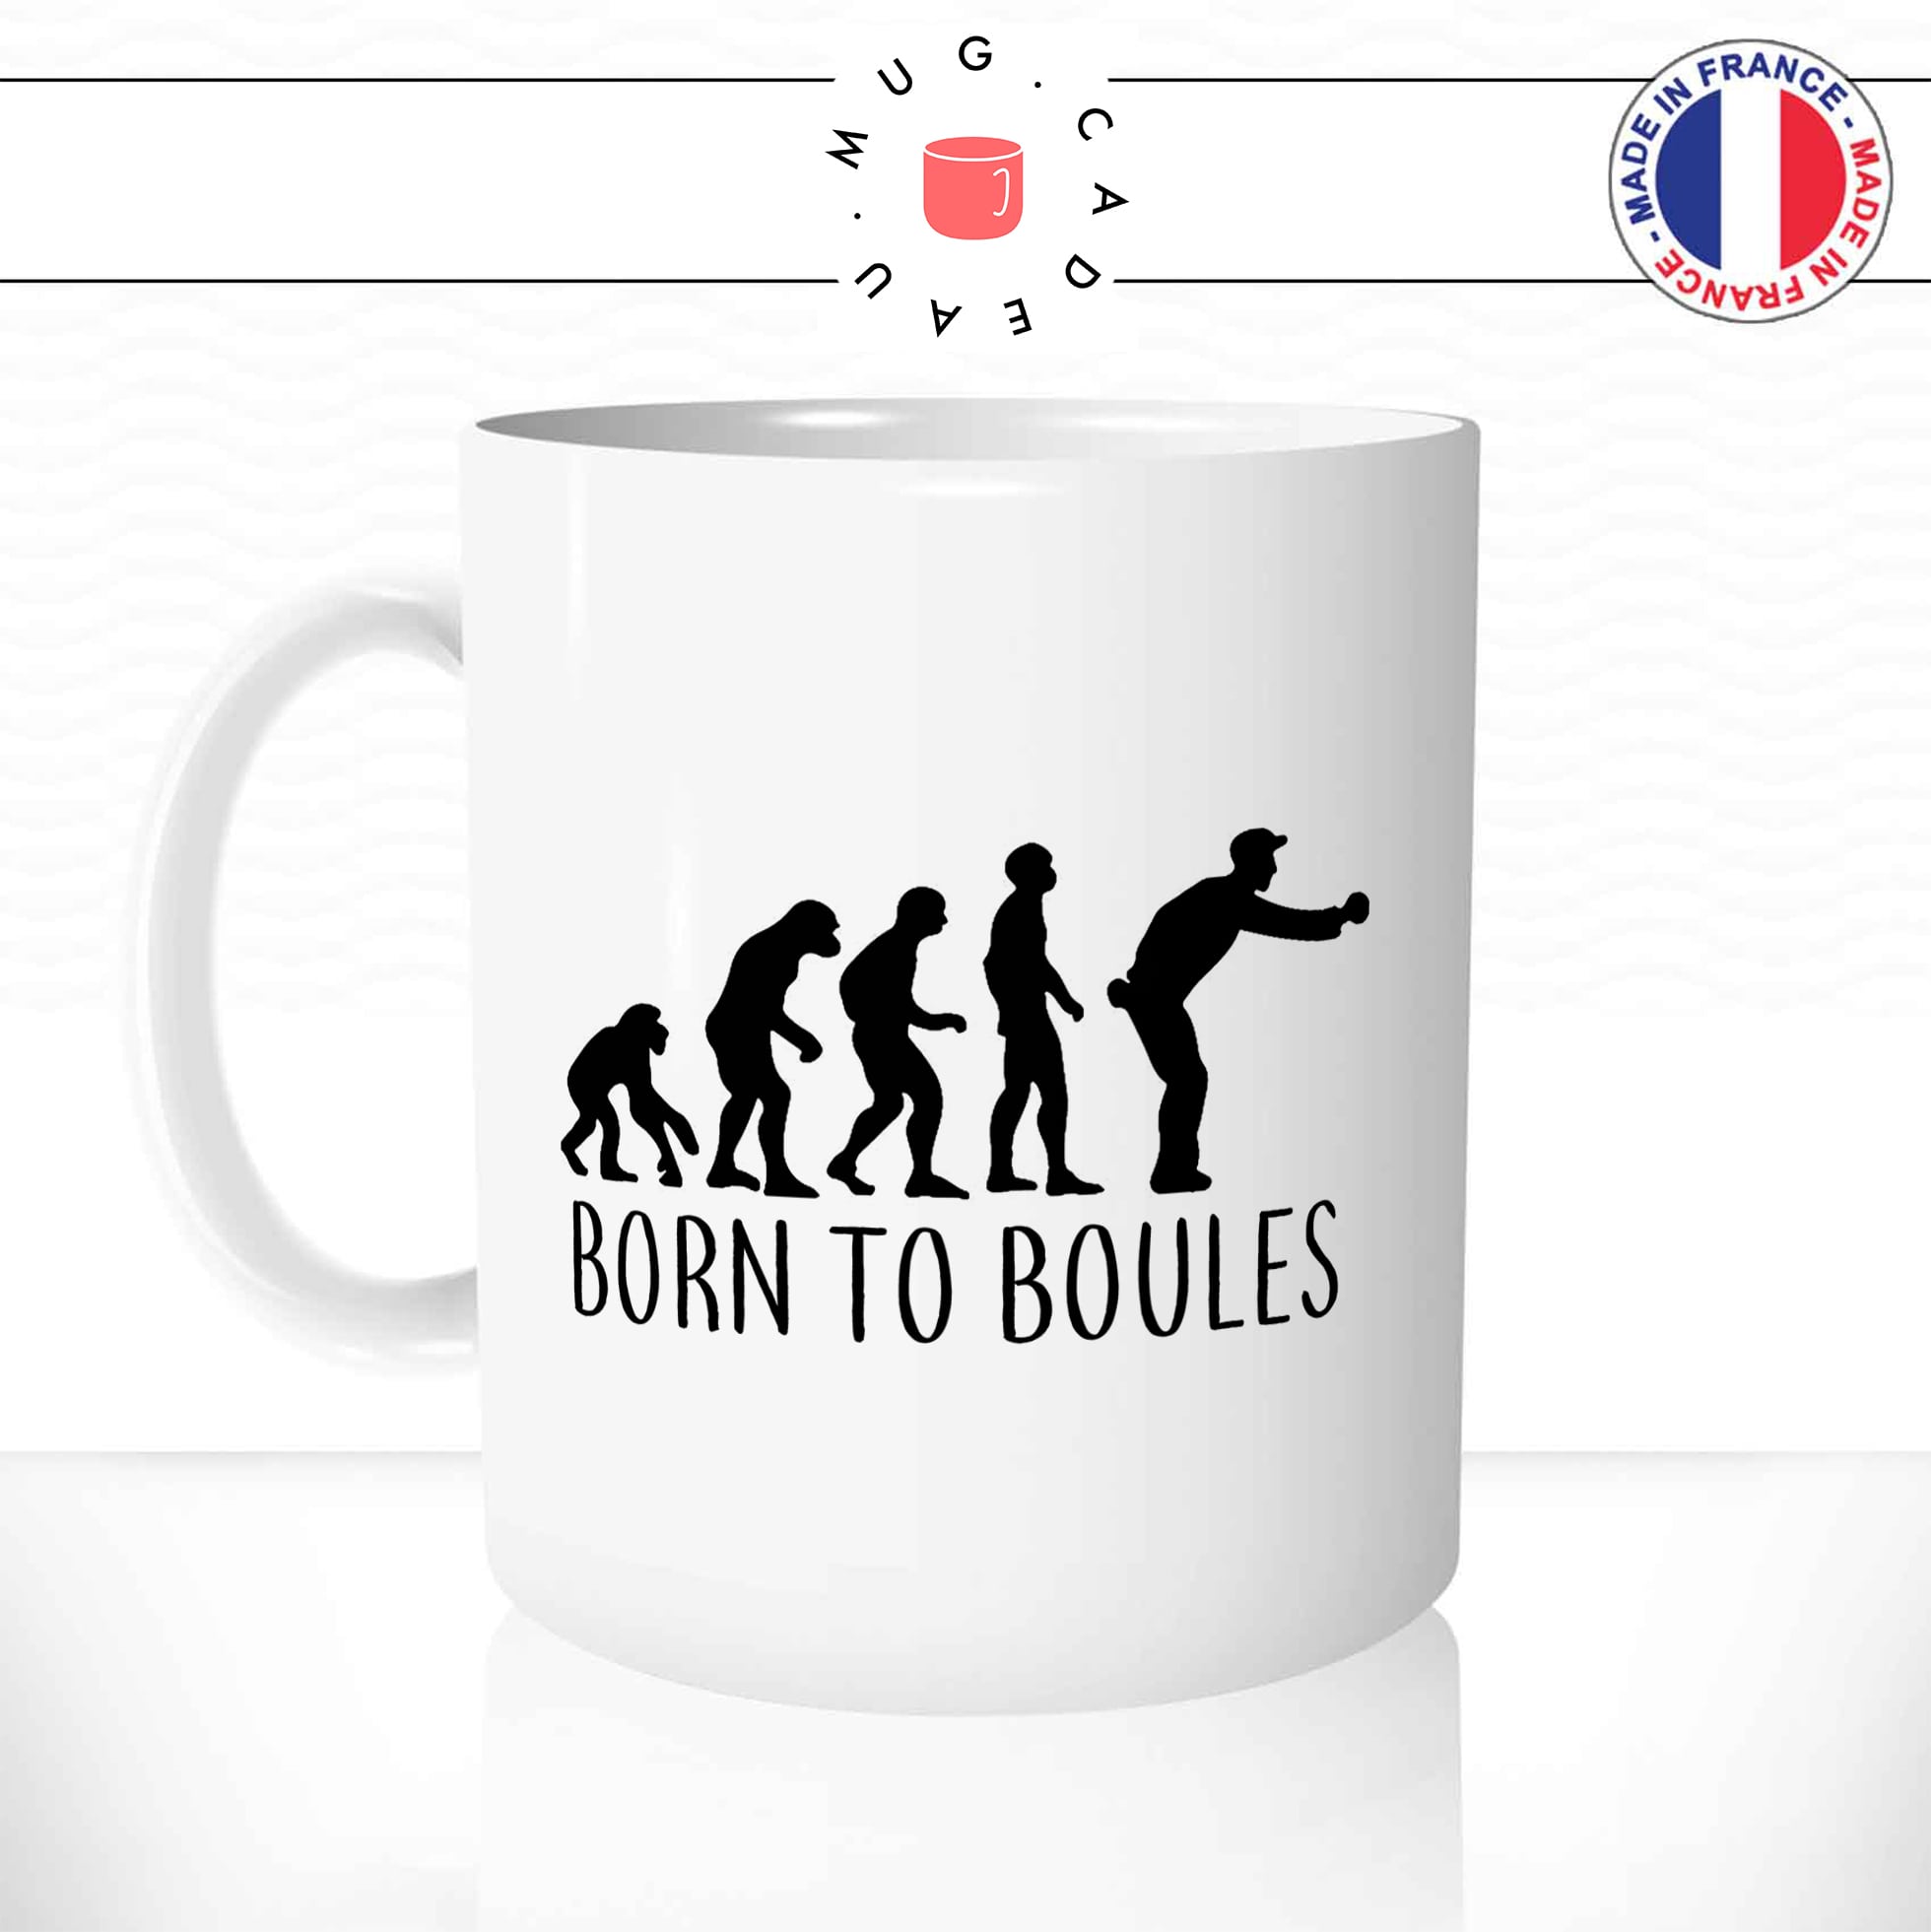 mug-tasse-born-to-boules-petanques-bouliste-sport-humour-evolution-de-l'homme-fun-café-thé-idée-cadeau-originale-personnalisée-min